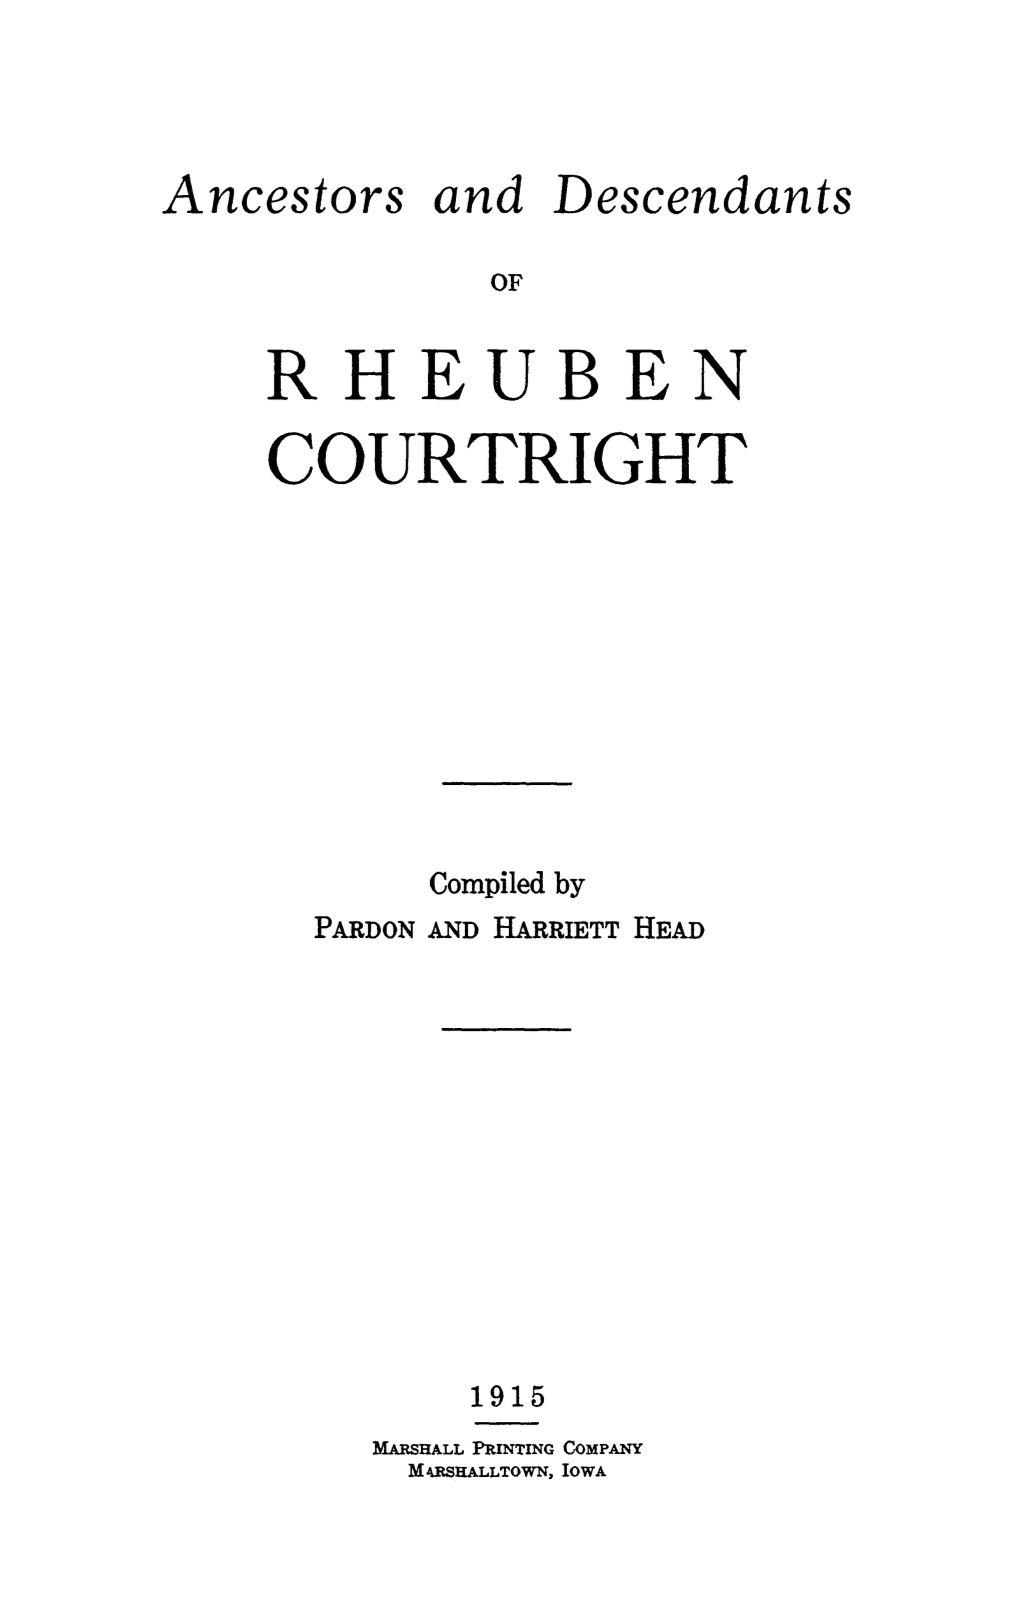 Rheuben Courtright